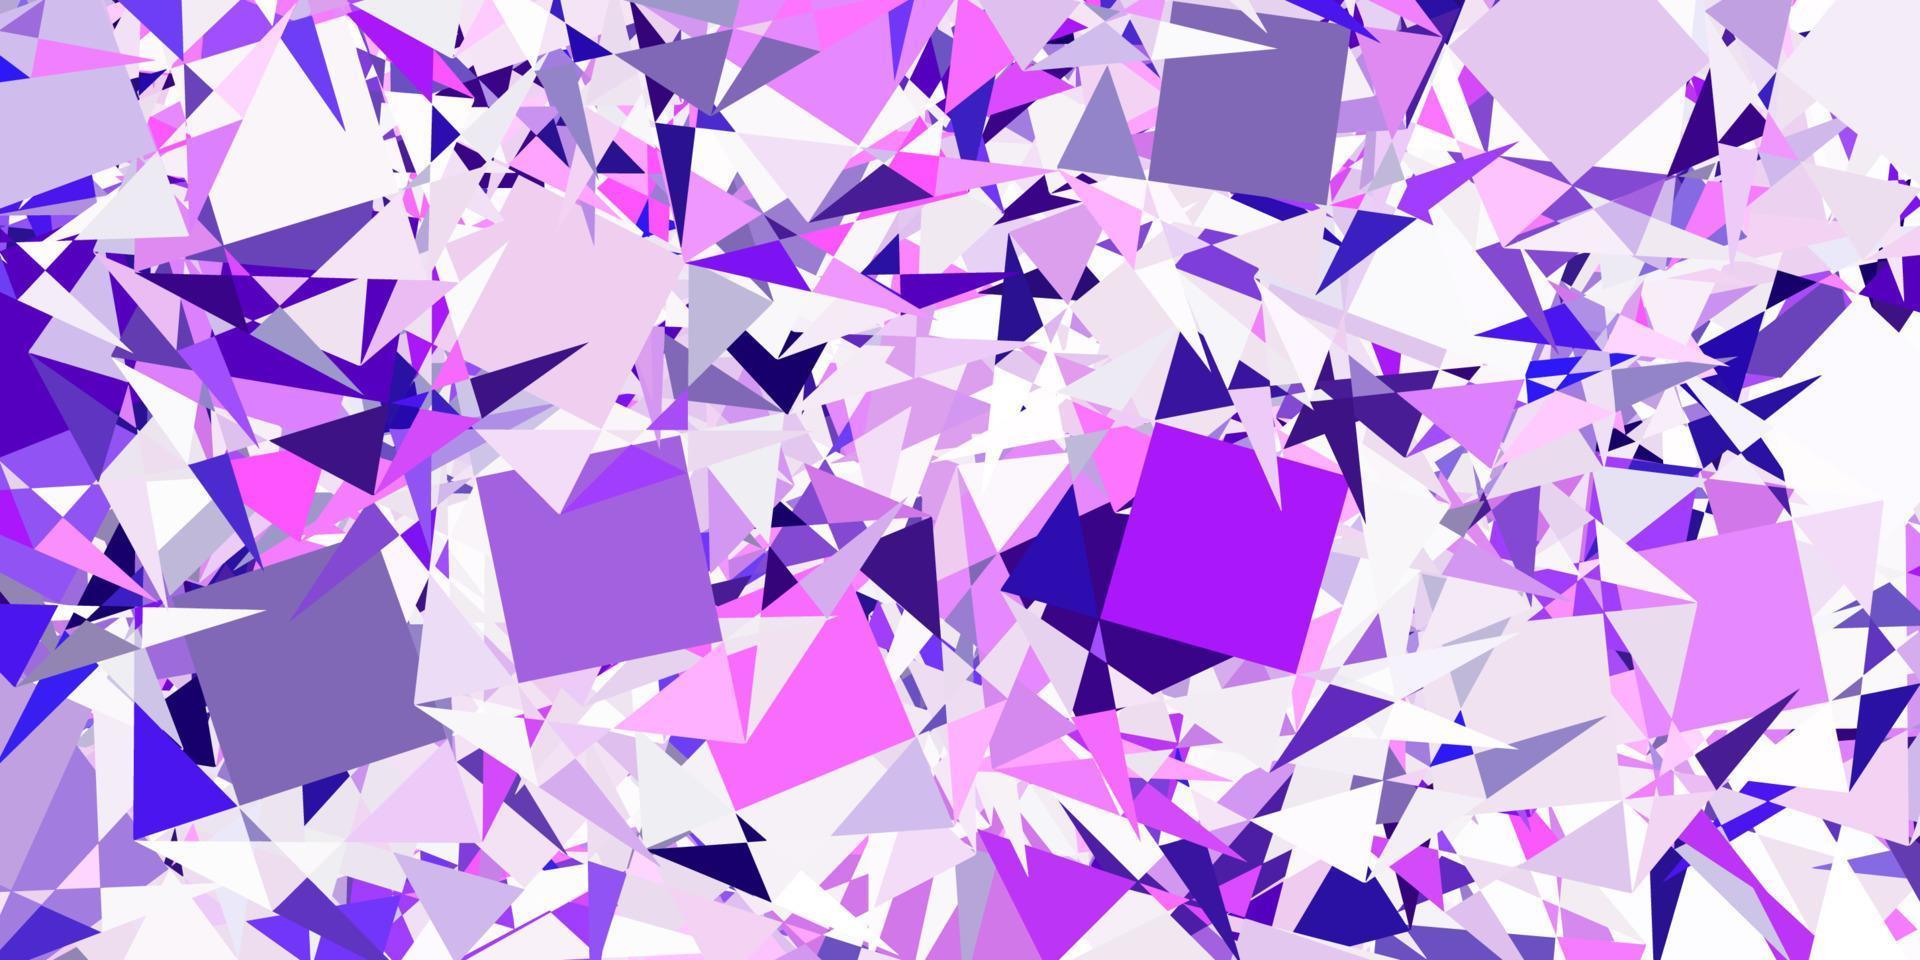 sfondo vettoriale viola chiaro con triangoli.